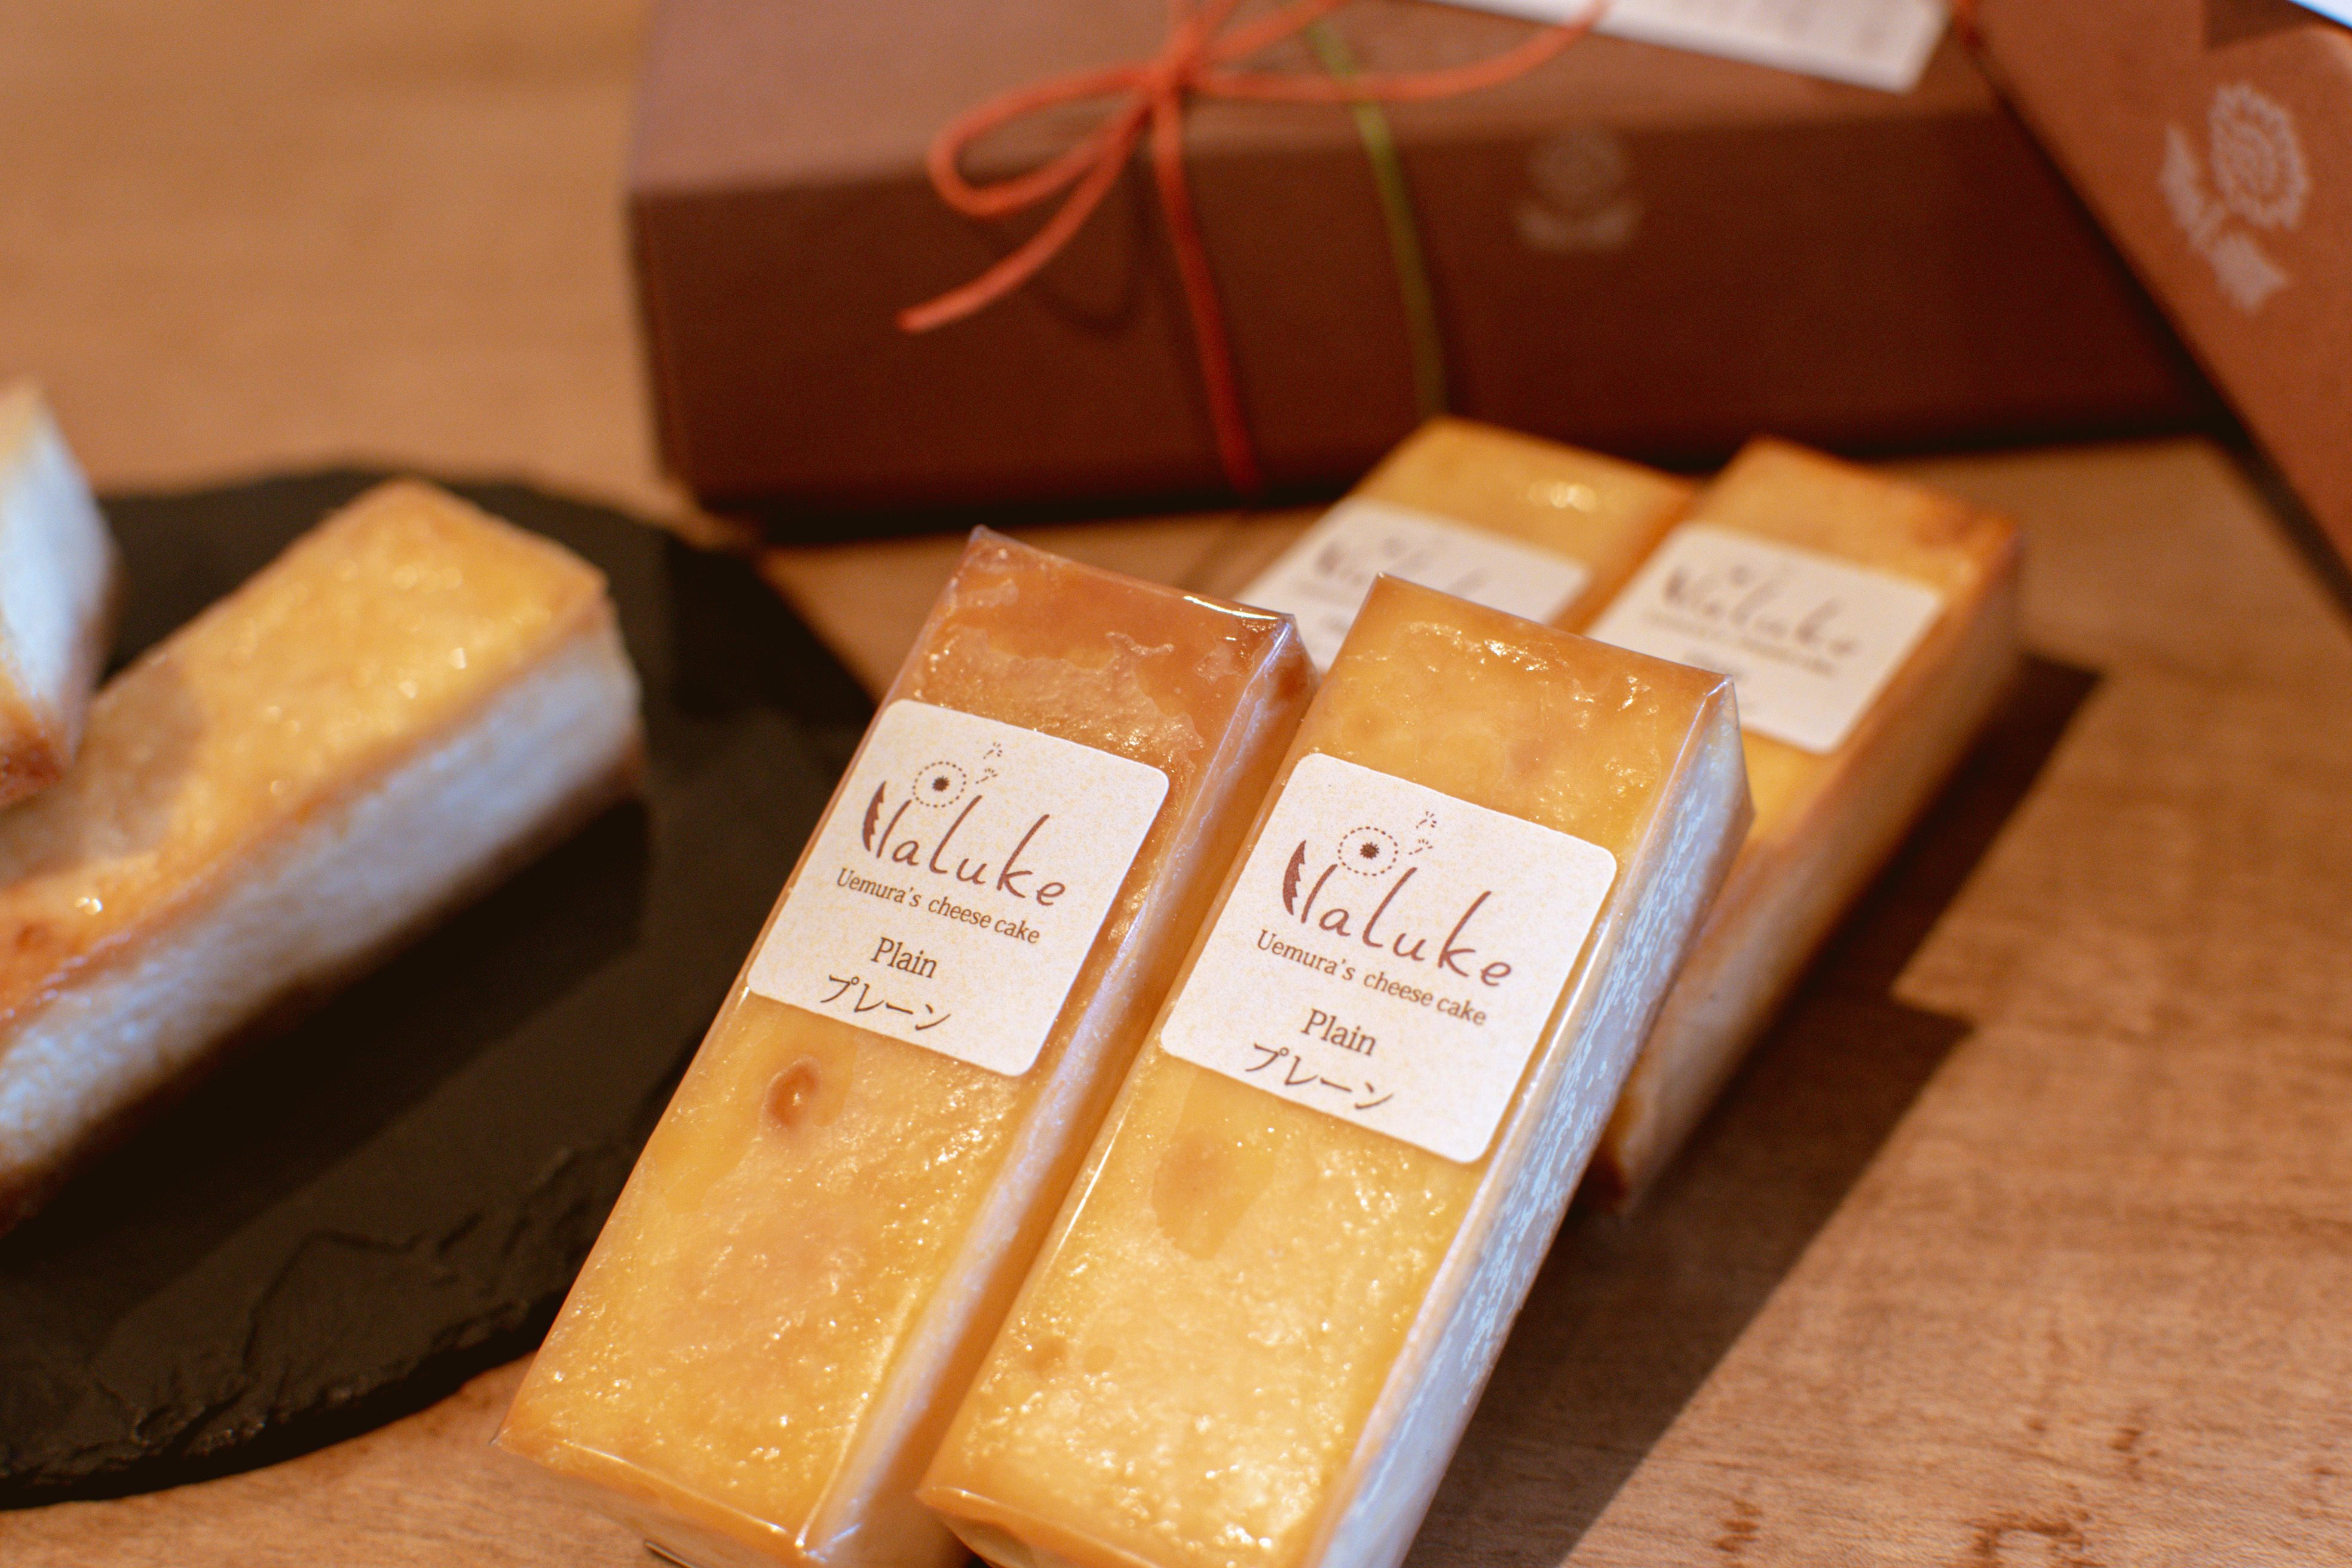 植村さんのチーズケーキ バータイプ プレーン ラムレーズン 12本詰め合わせセット Cafe Factory Paluke